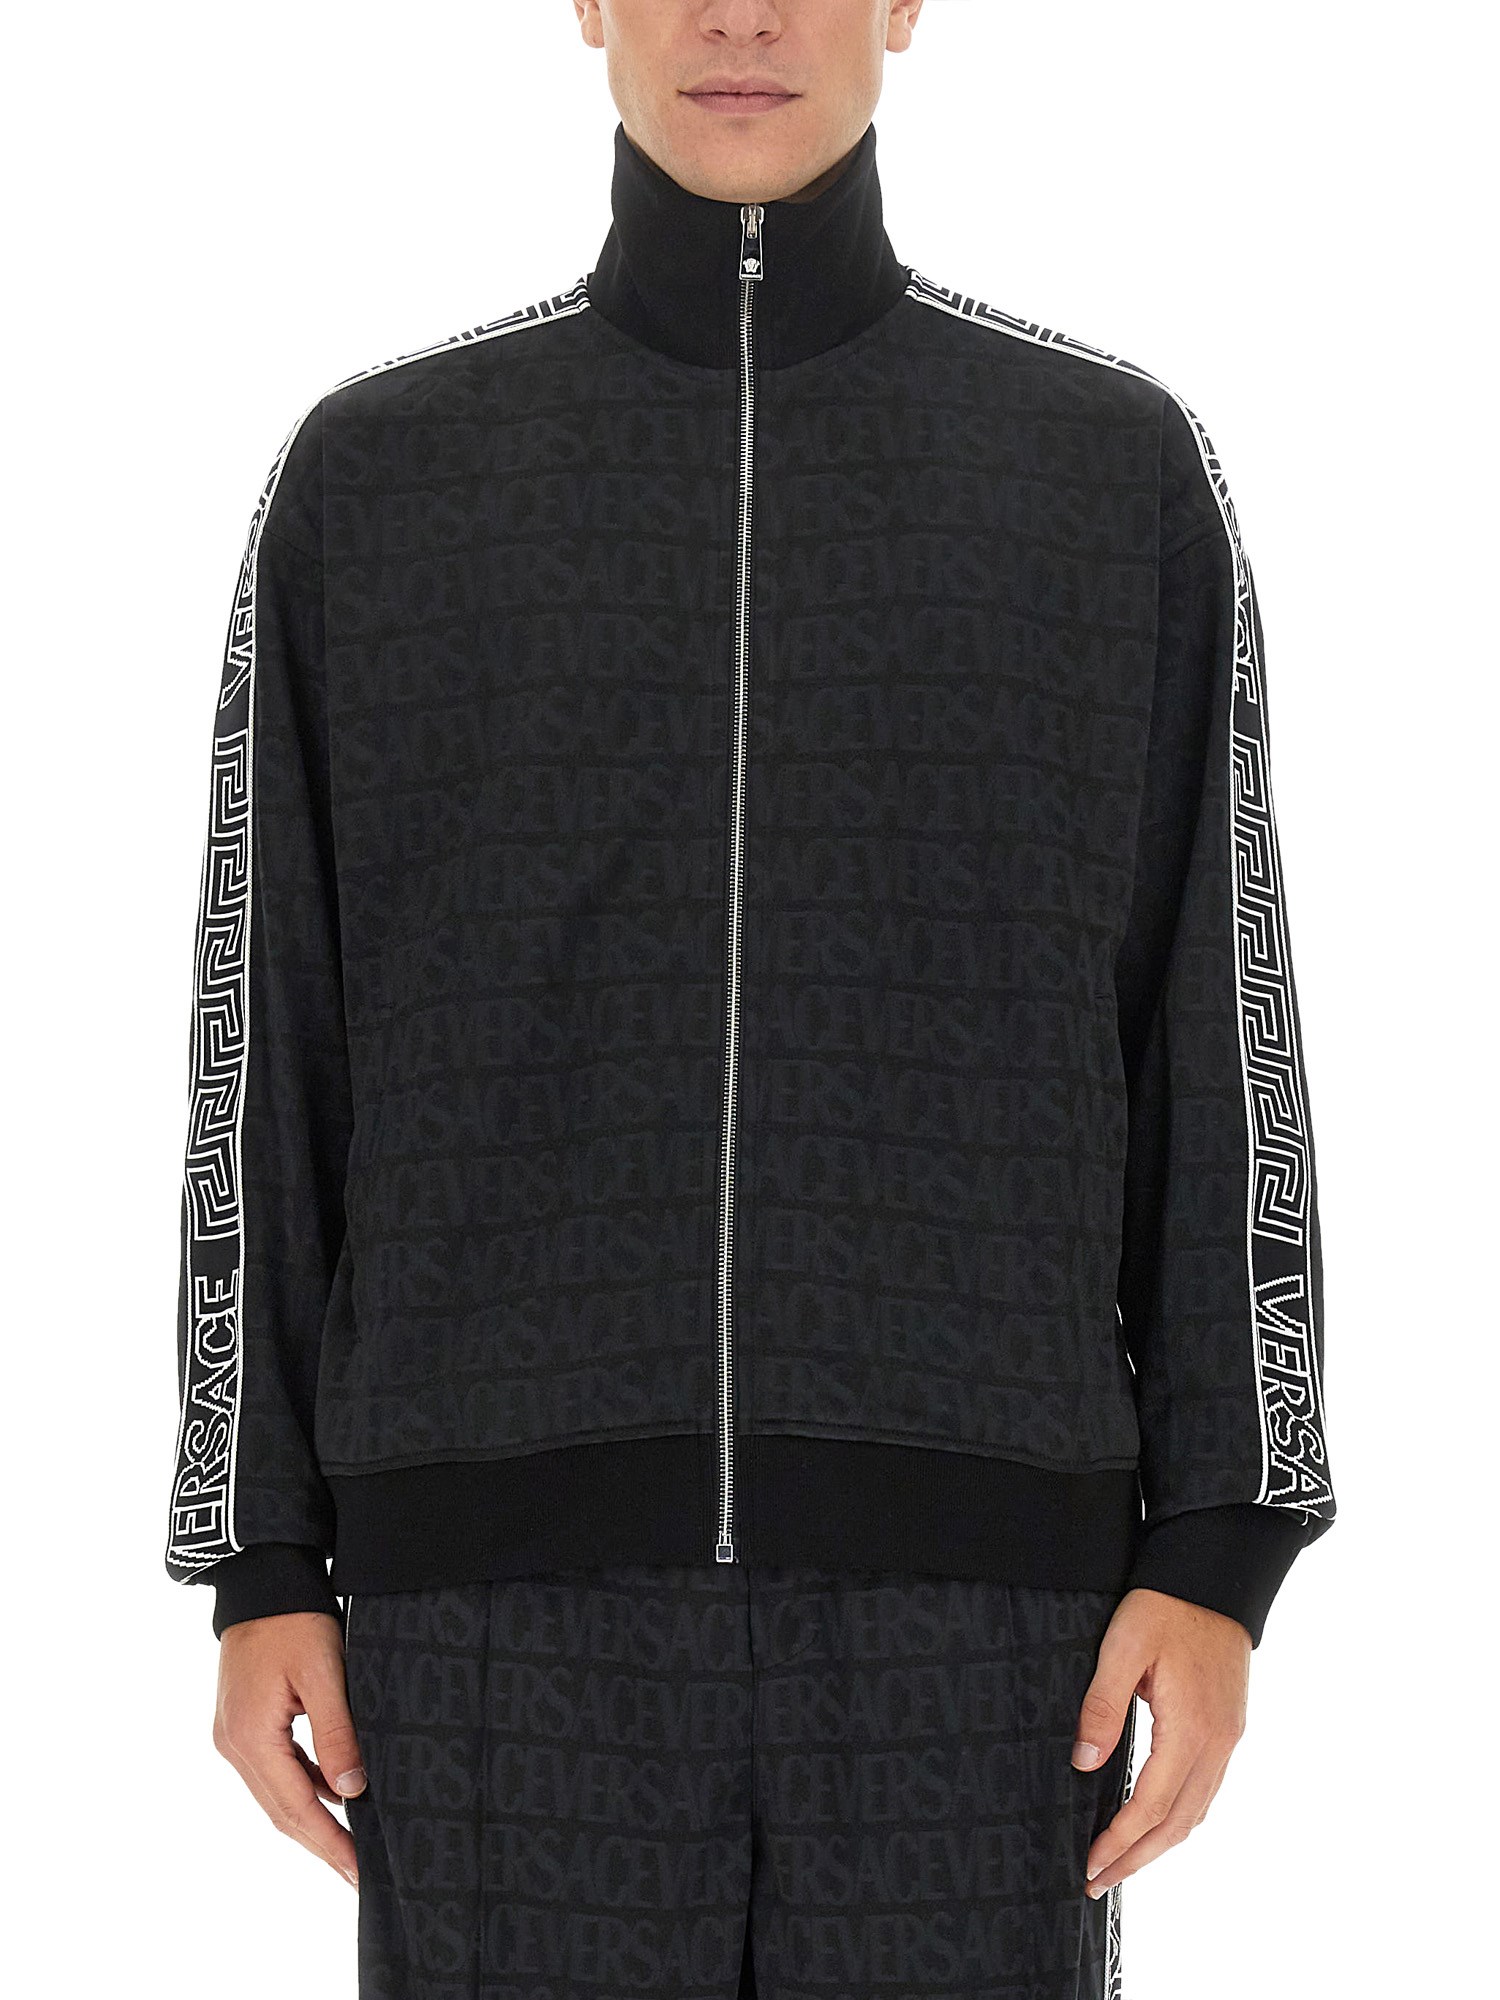 Versace versace zip sweatshirt.